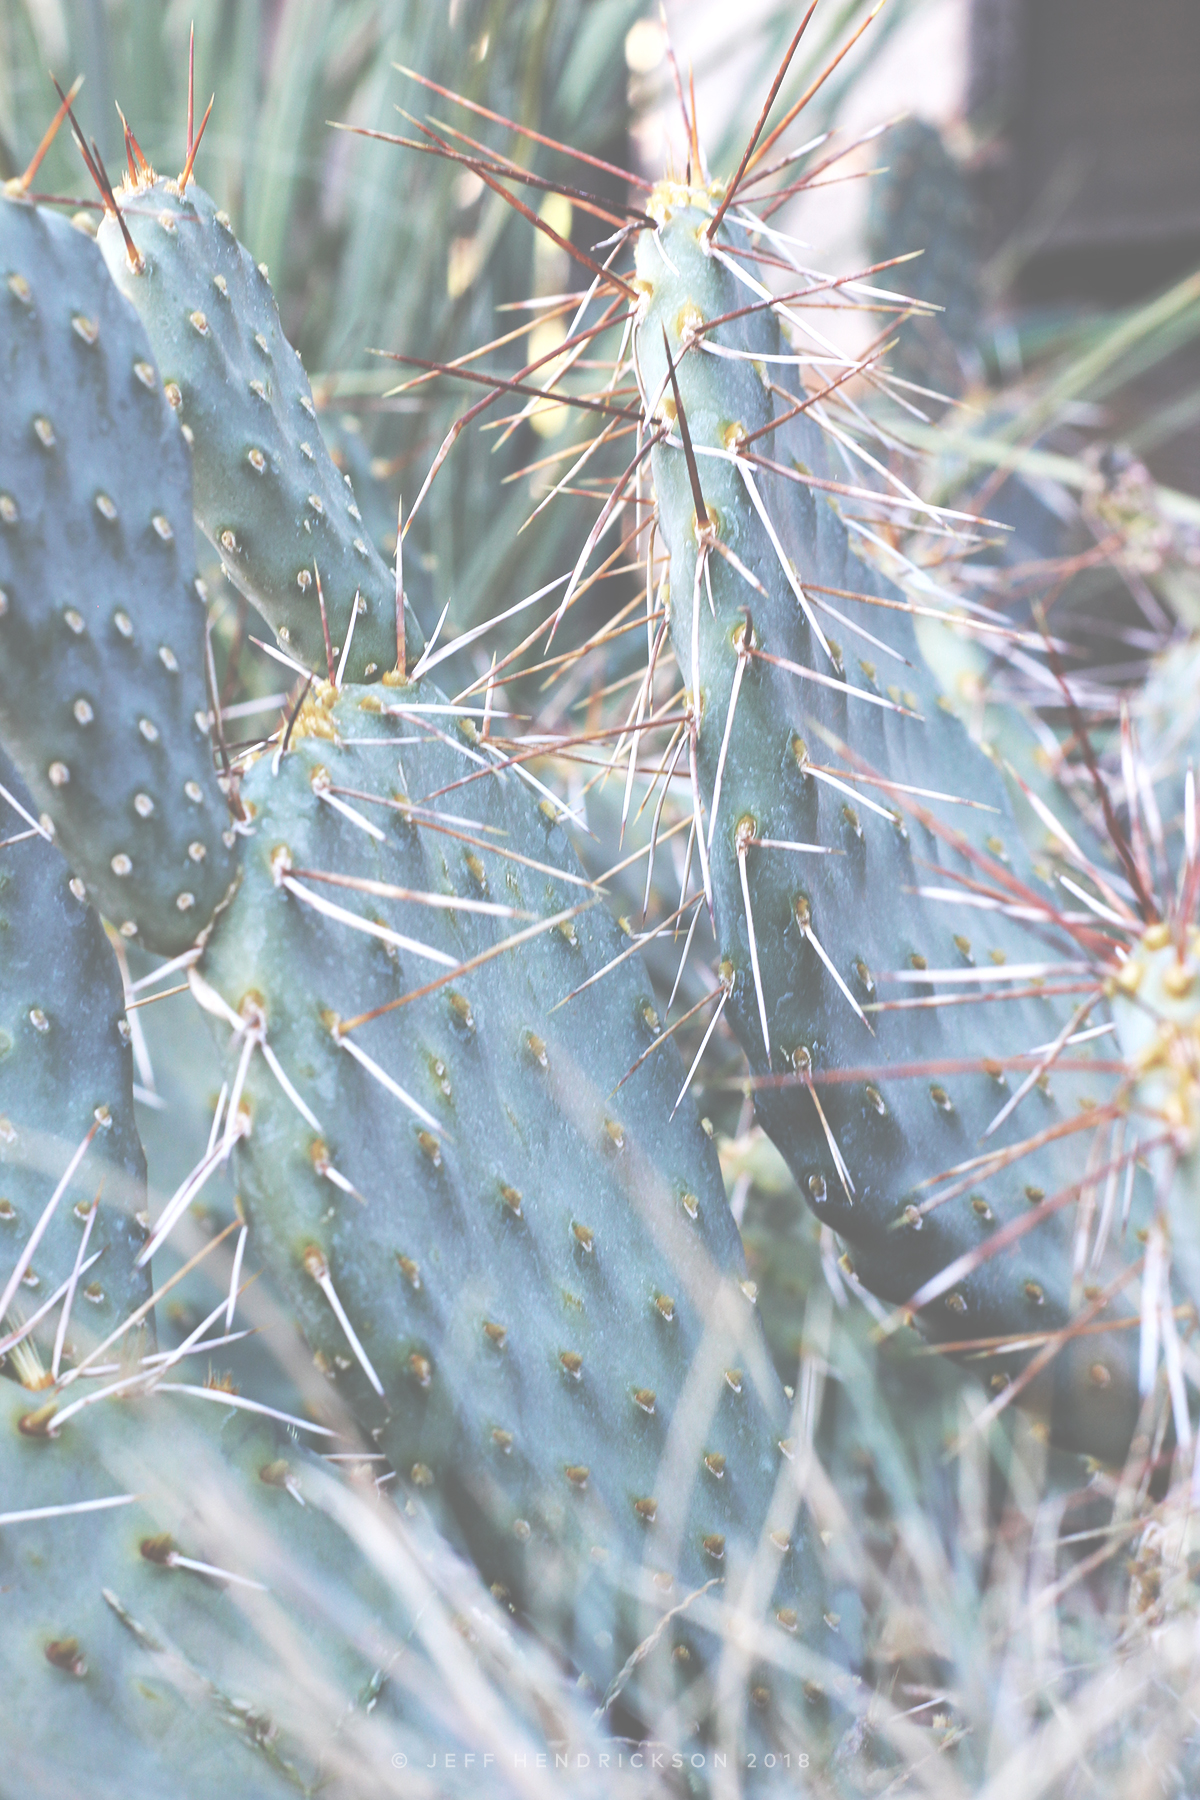 Cactus in Southern Utah